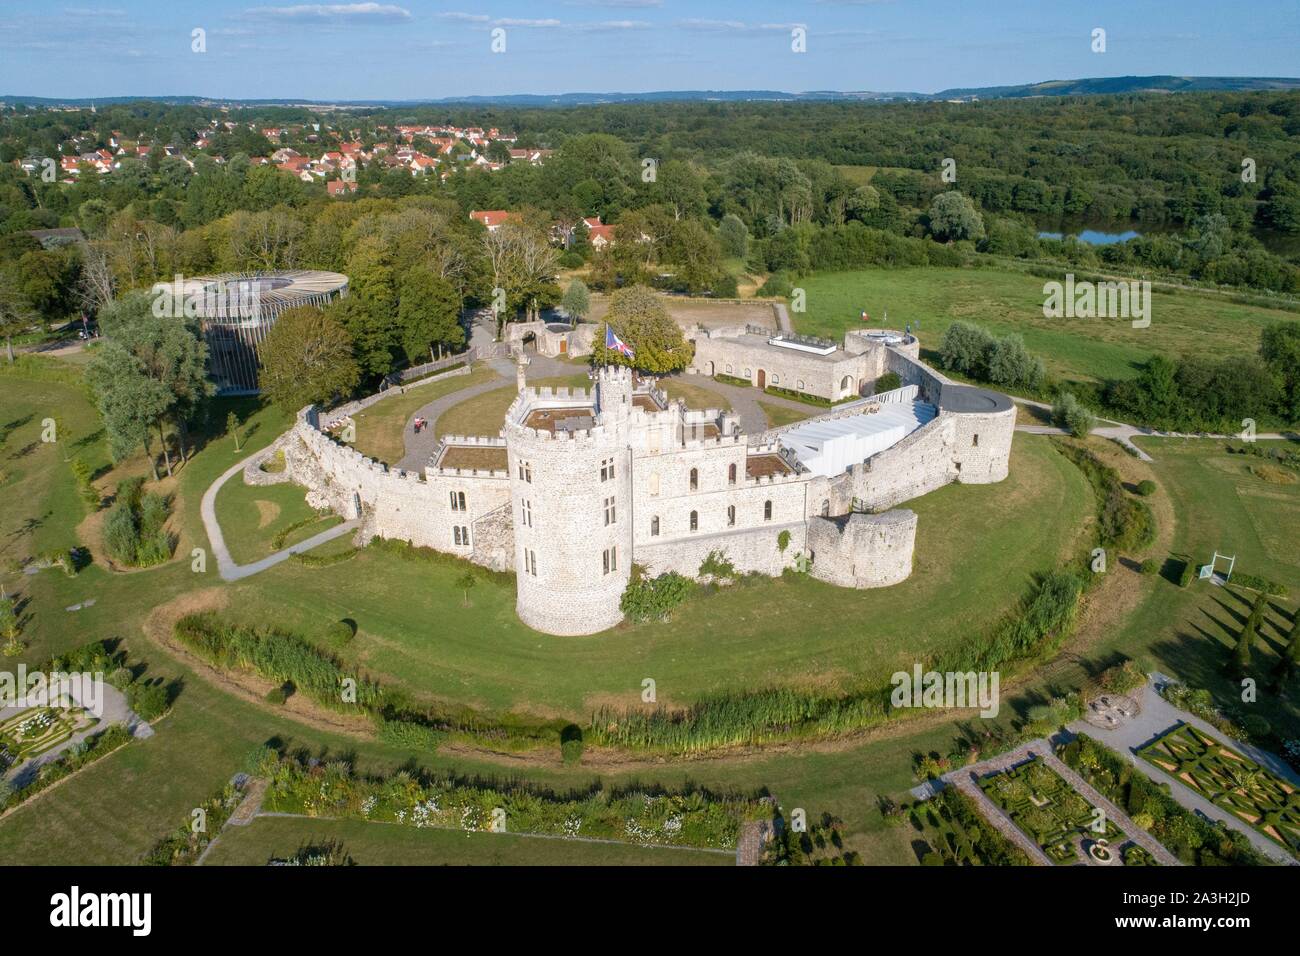 La France, Pas de Calais, Calais, Hardelot château, manoir de style Tudor du début du xxe siècle construite sur les fondations d'un château (vue aérienne) Banque D'Images